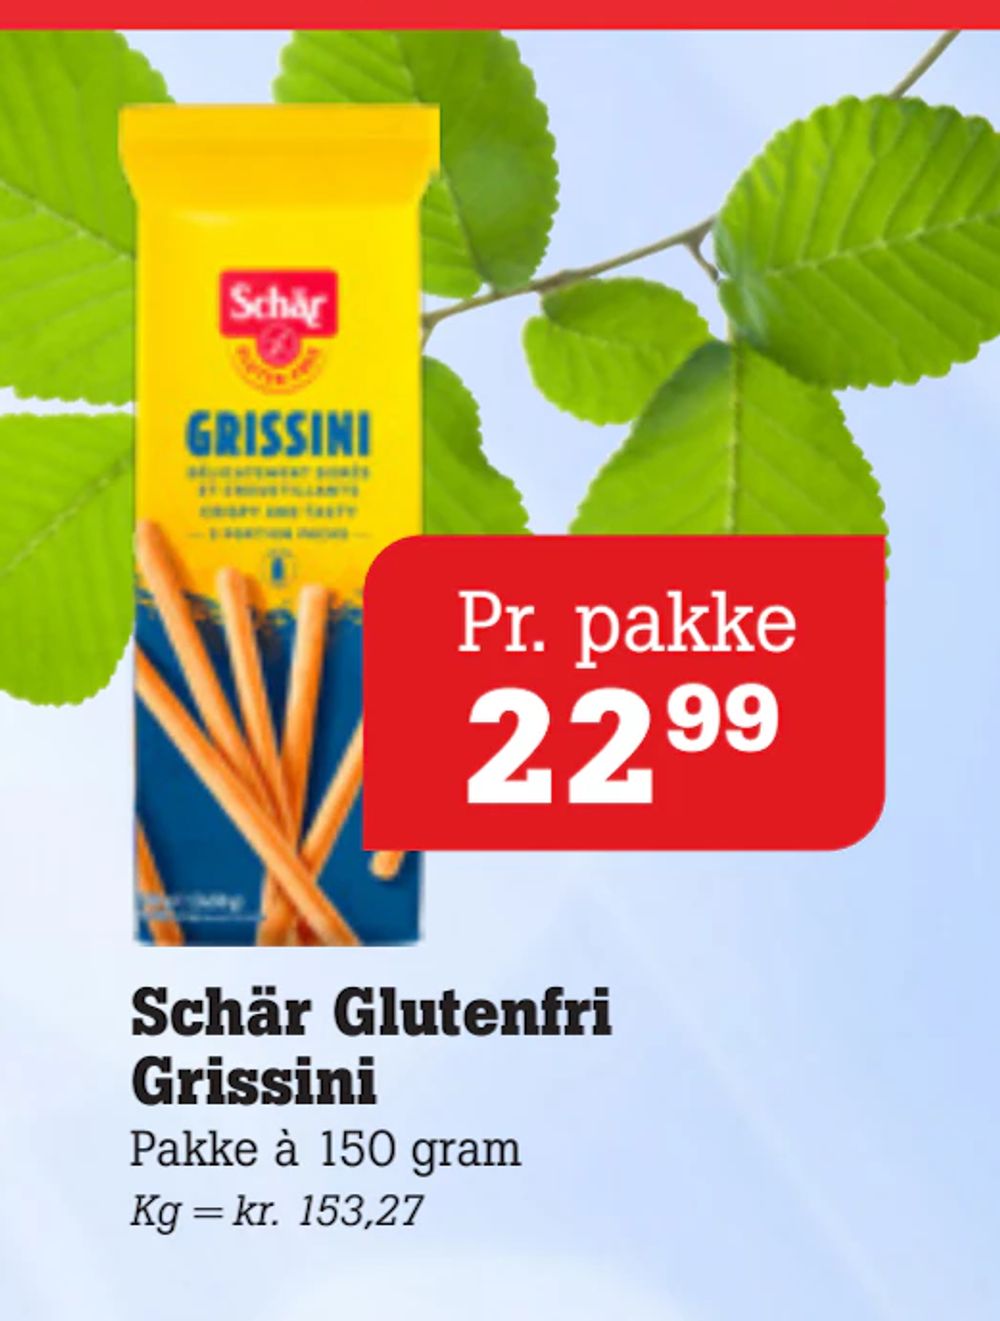 Tilbud på Schär Glutenfri Grissini fra Poetzsch Padborg til 22,99 kr.